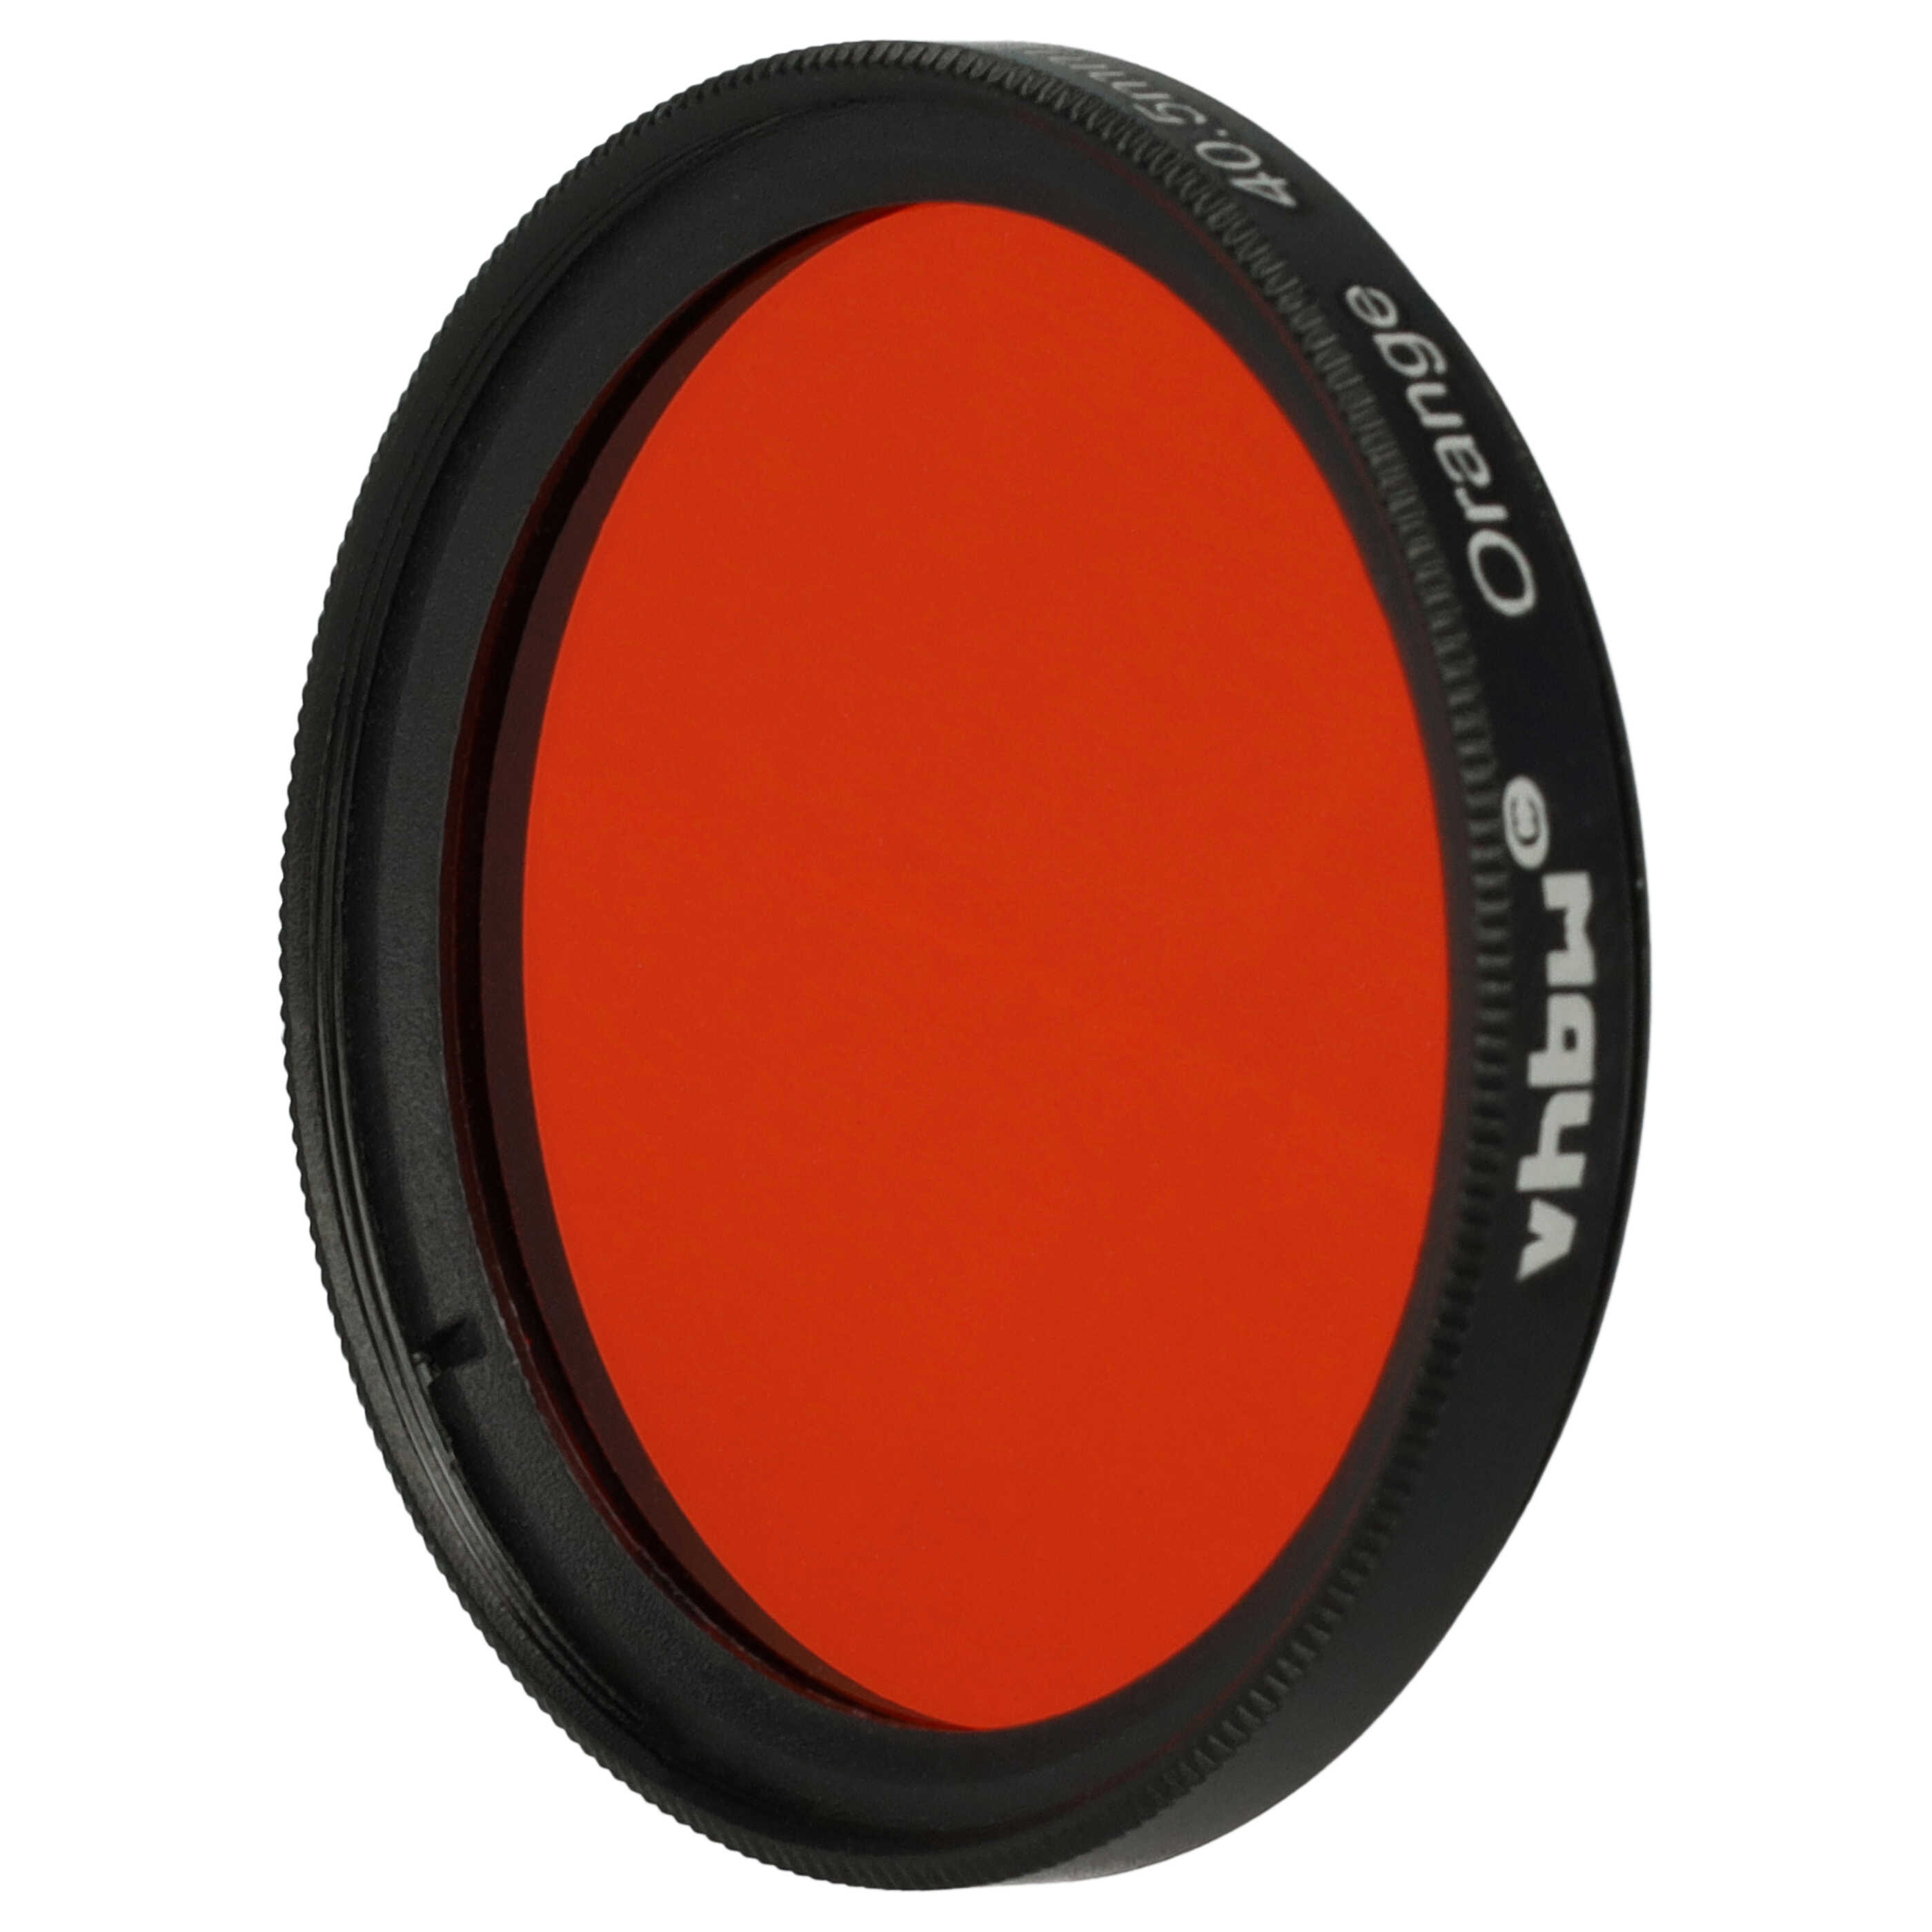 Farbfilter orange passend für Kamera Objektive mit 40,5 mm Filtergewinde - Orangefilter